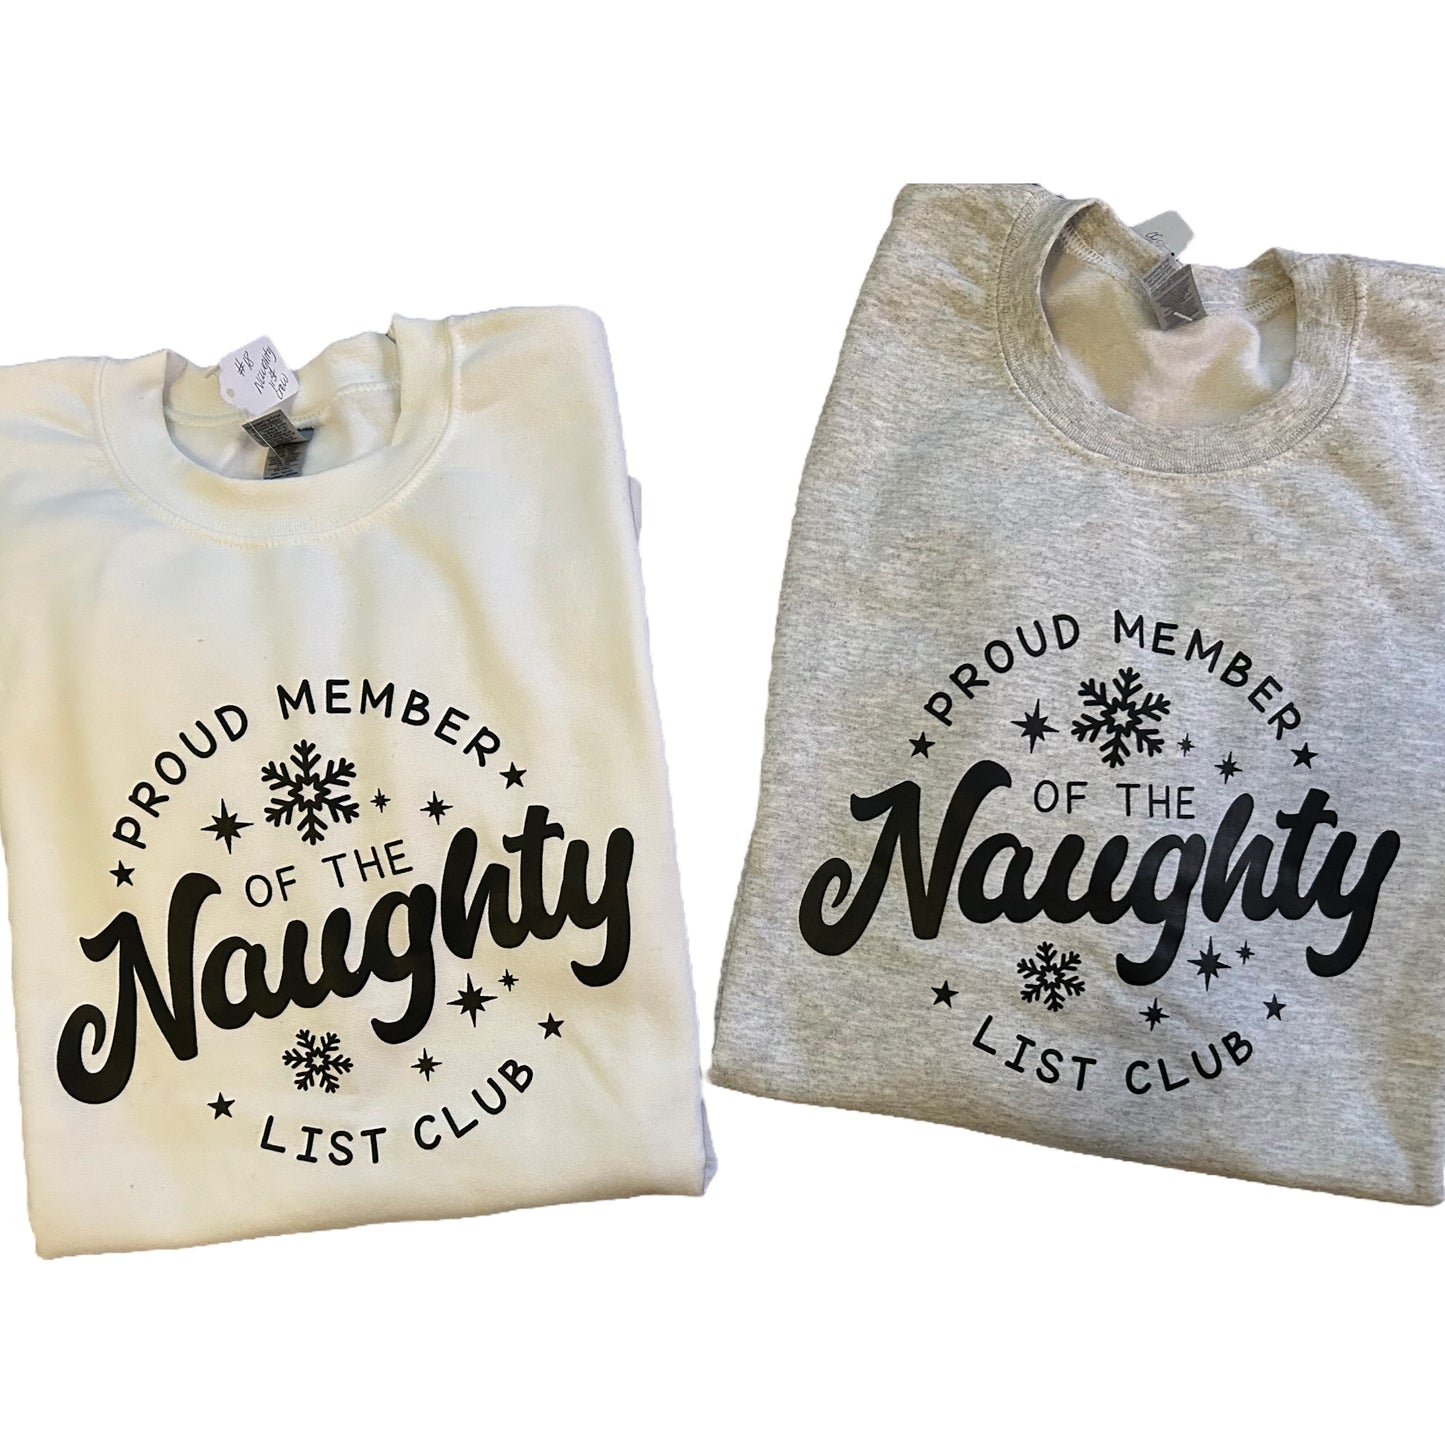 Naughty List Club-Tee or Crewneck Sweatshirt